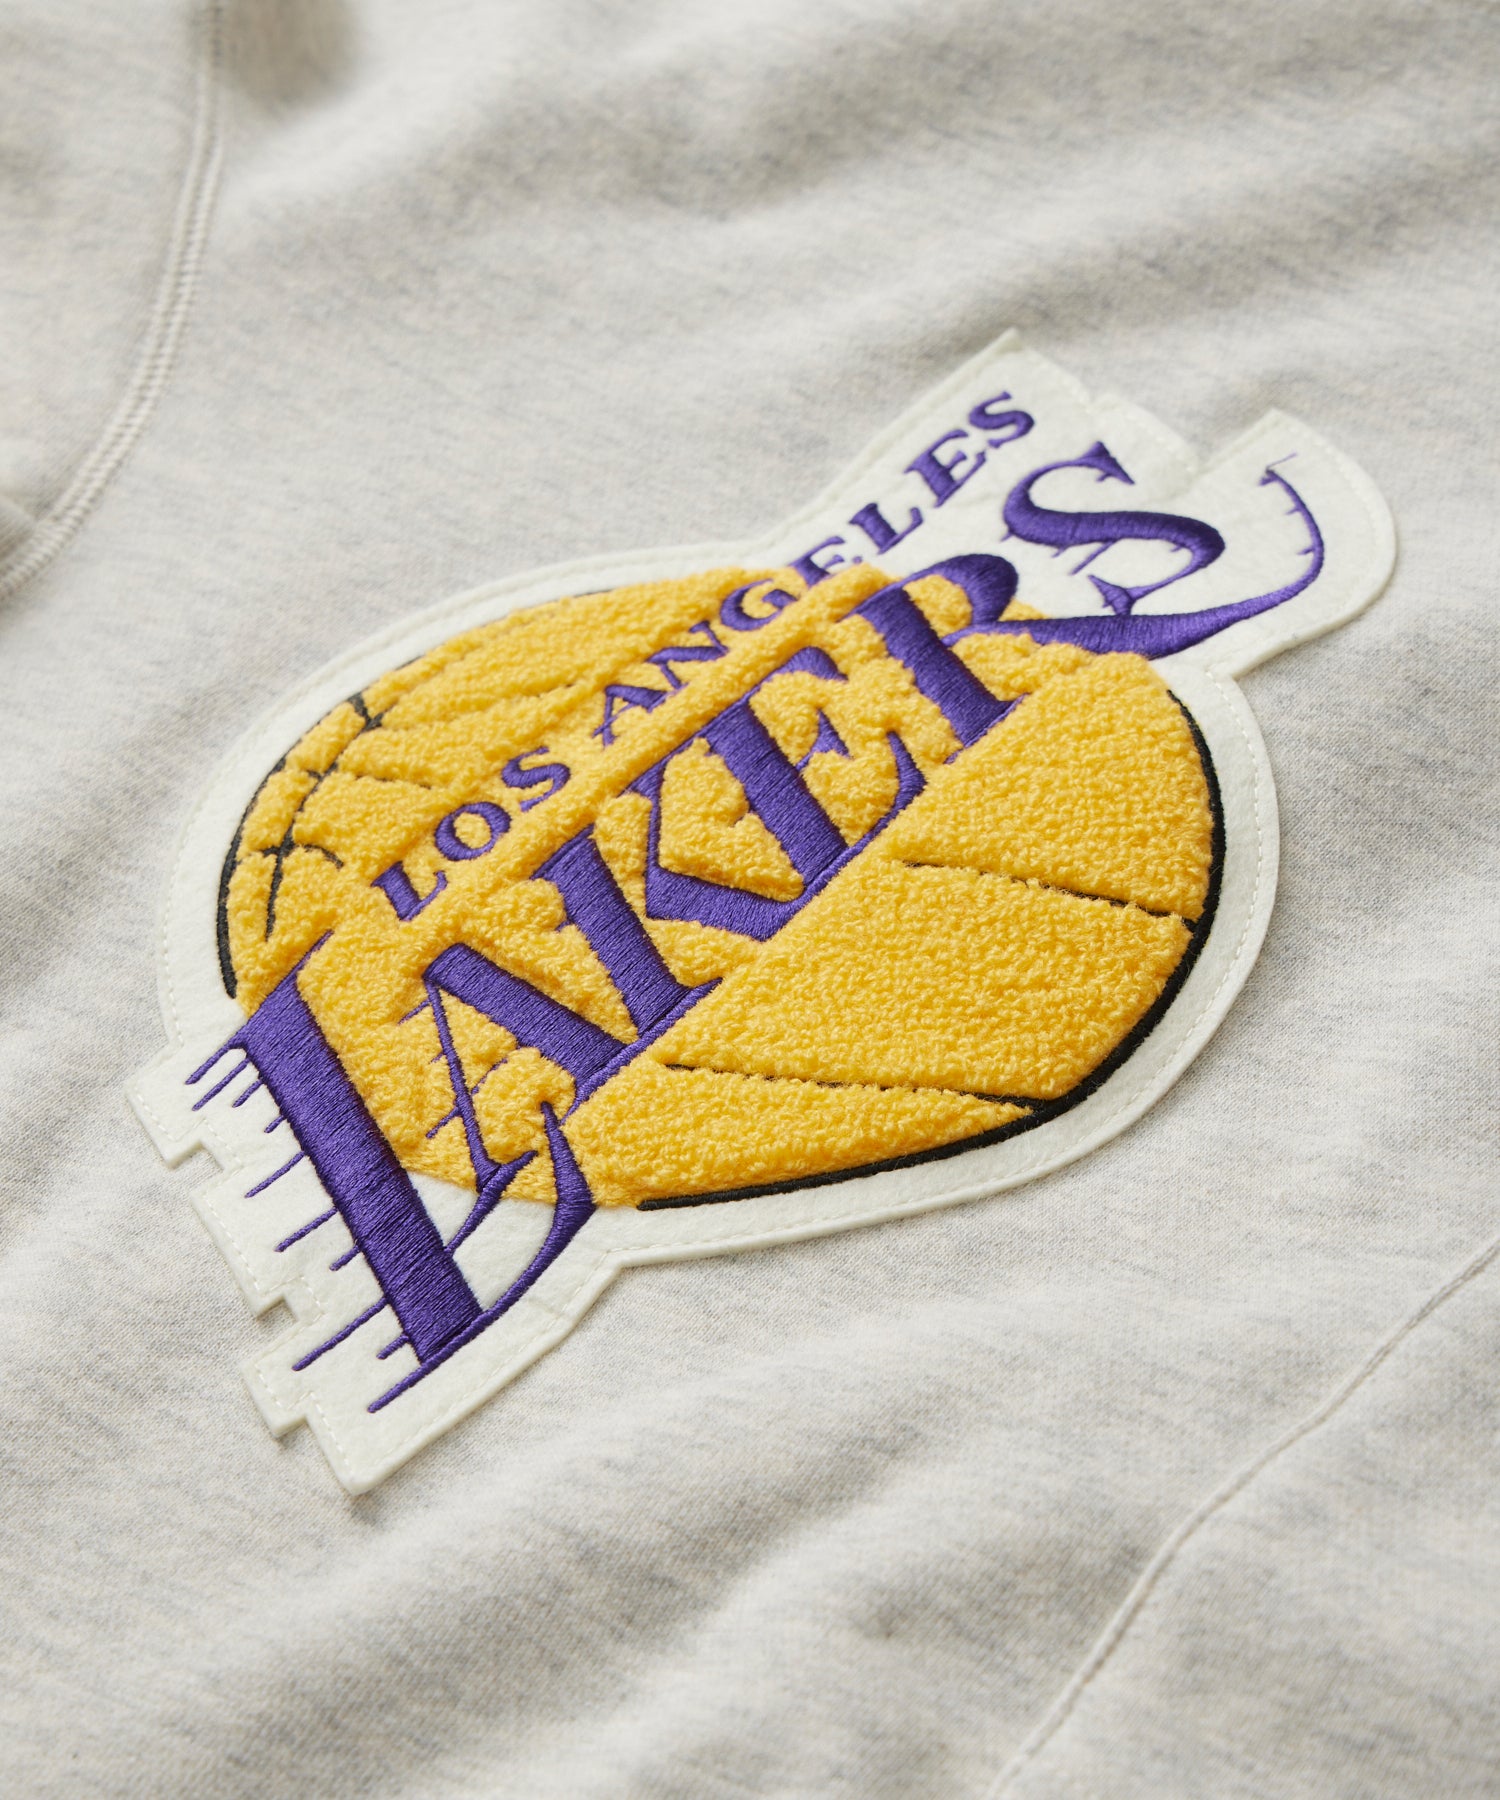 L) LA Lakers Nike Hoodie